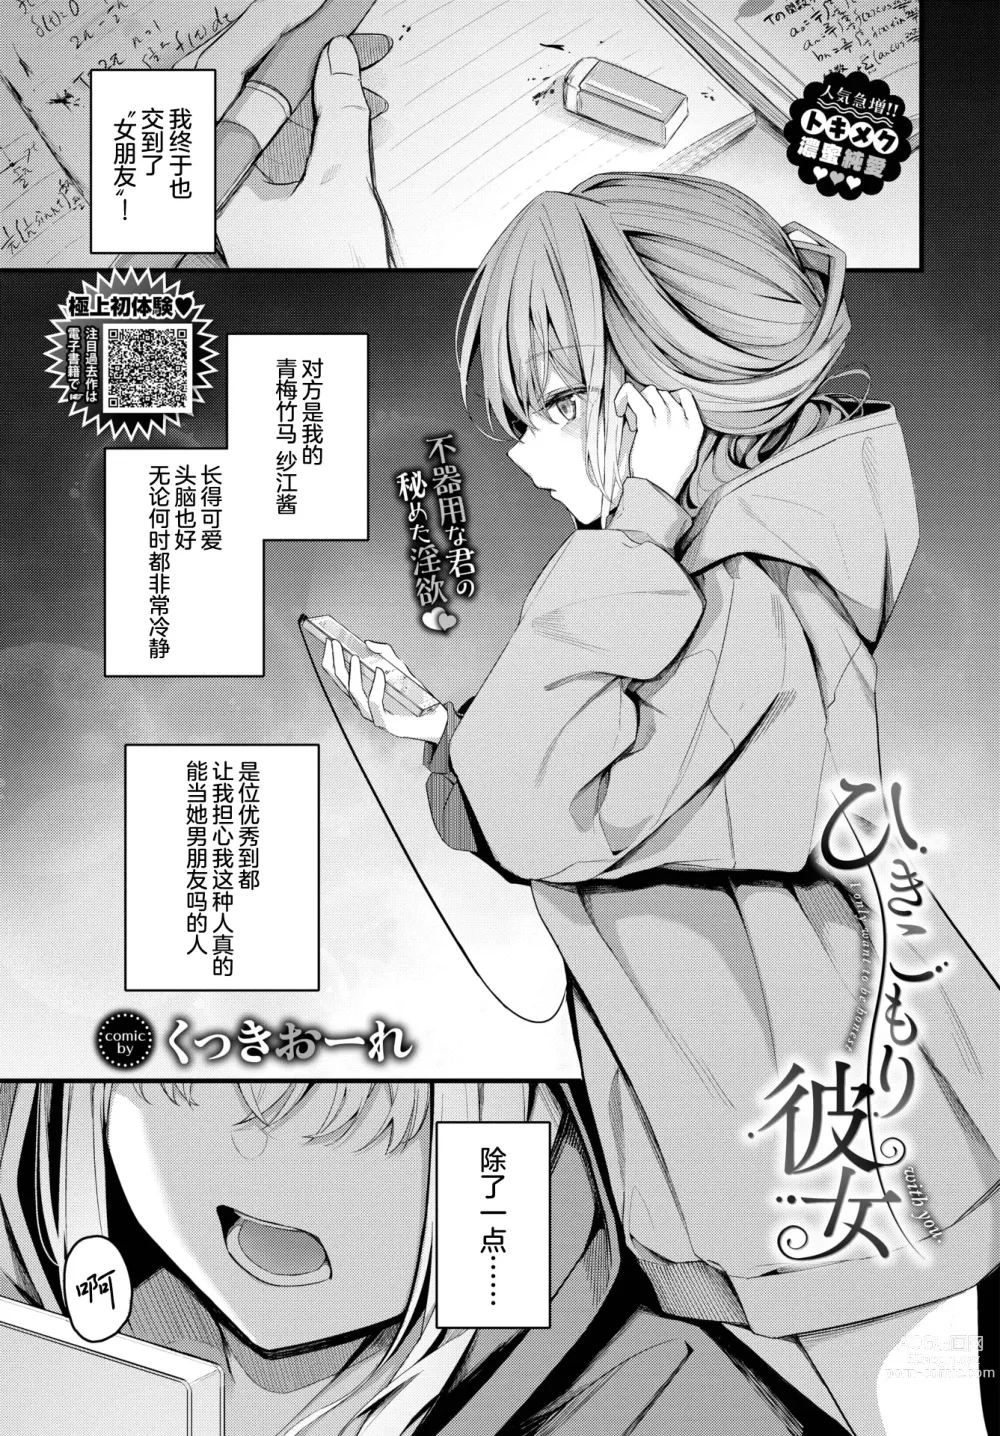 Page 2 of manga Hikikomori Kanojo